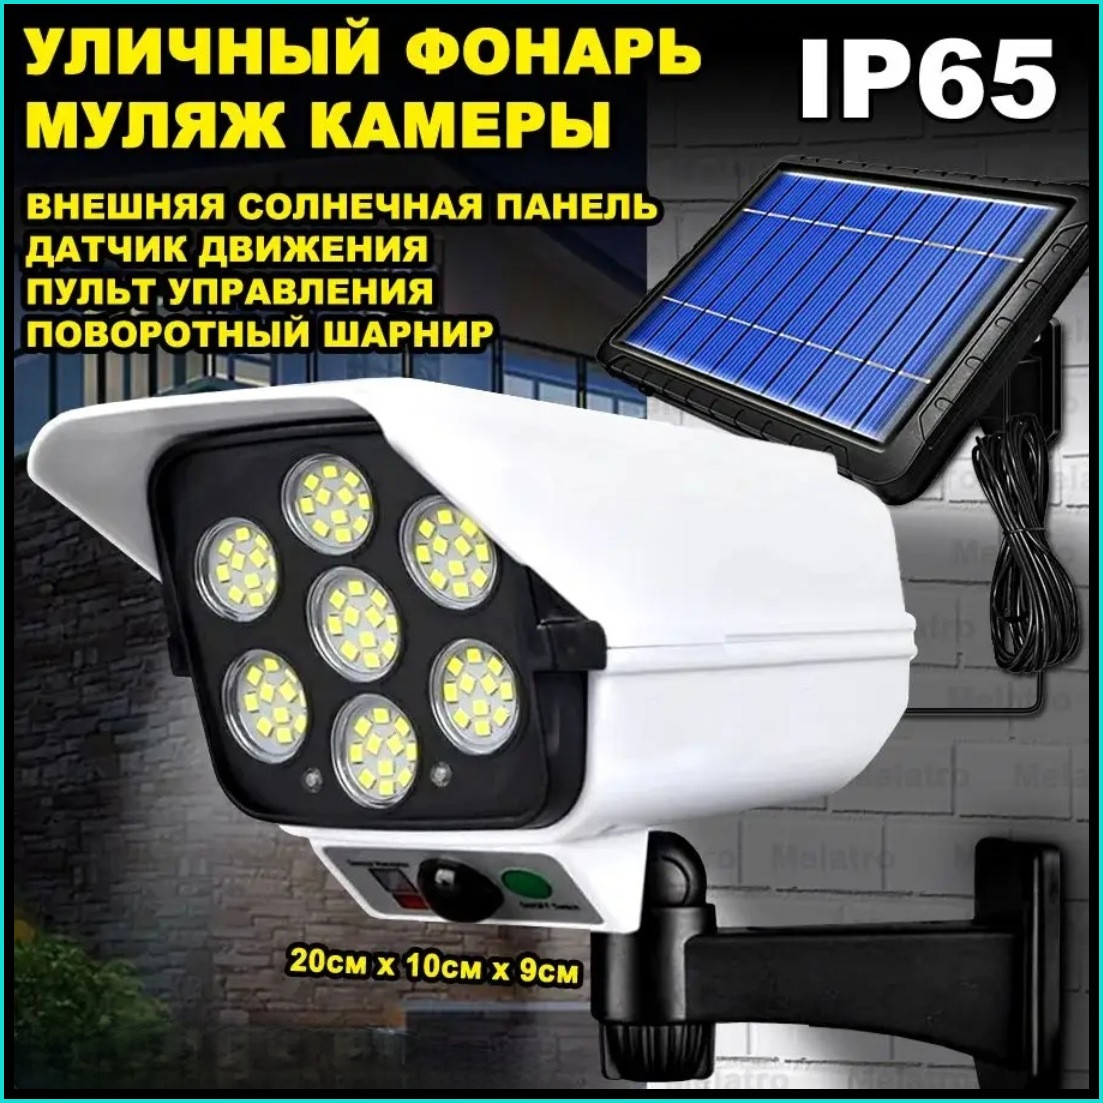 Прожектор в виде камеры наблюдения на солнечных батареях с пультом управления.